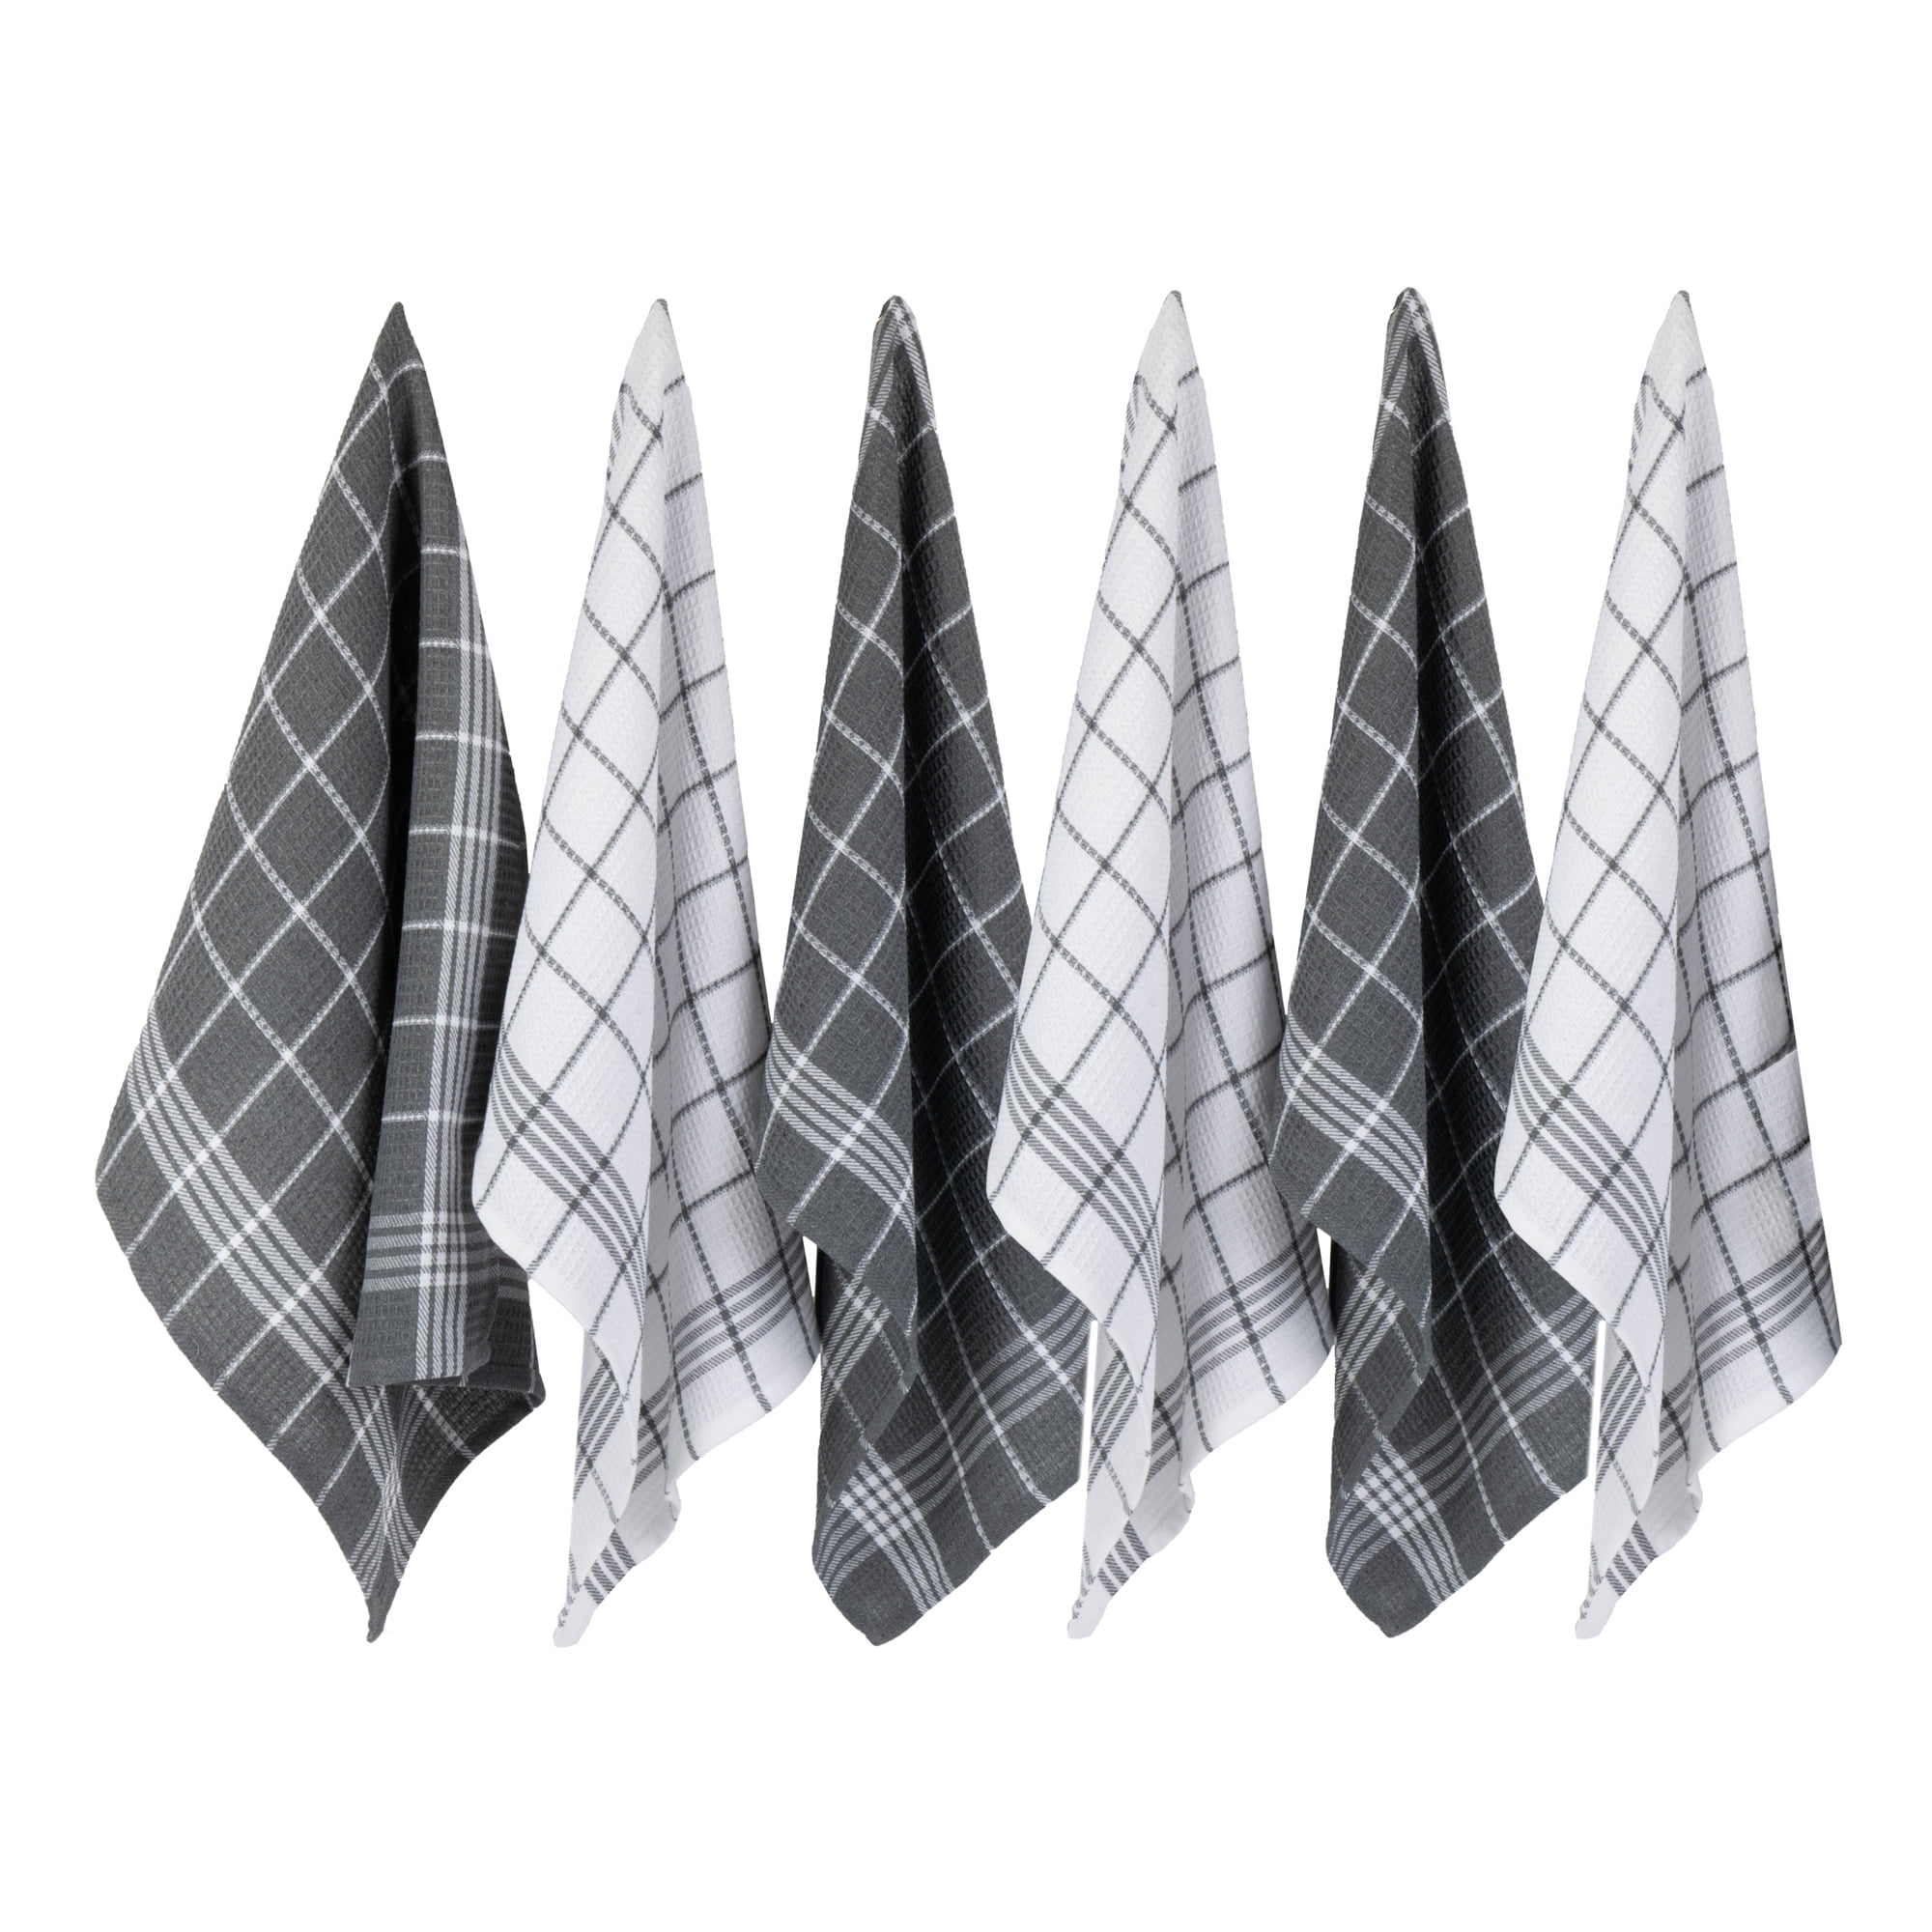 Design Imports 70326a Gray Waffle Weave Dishtowel Set - Set Of 6